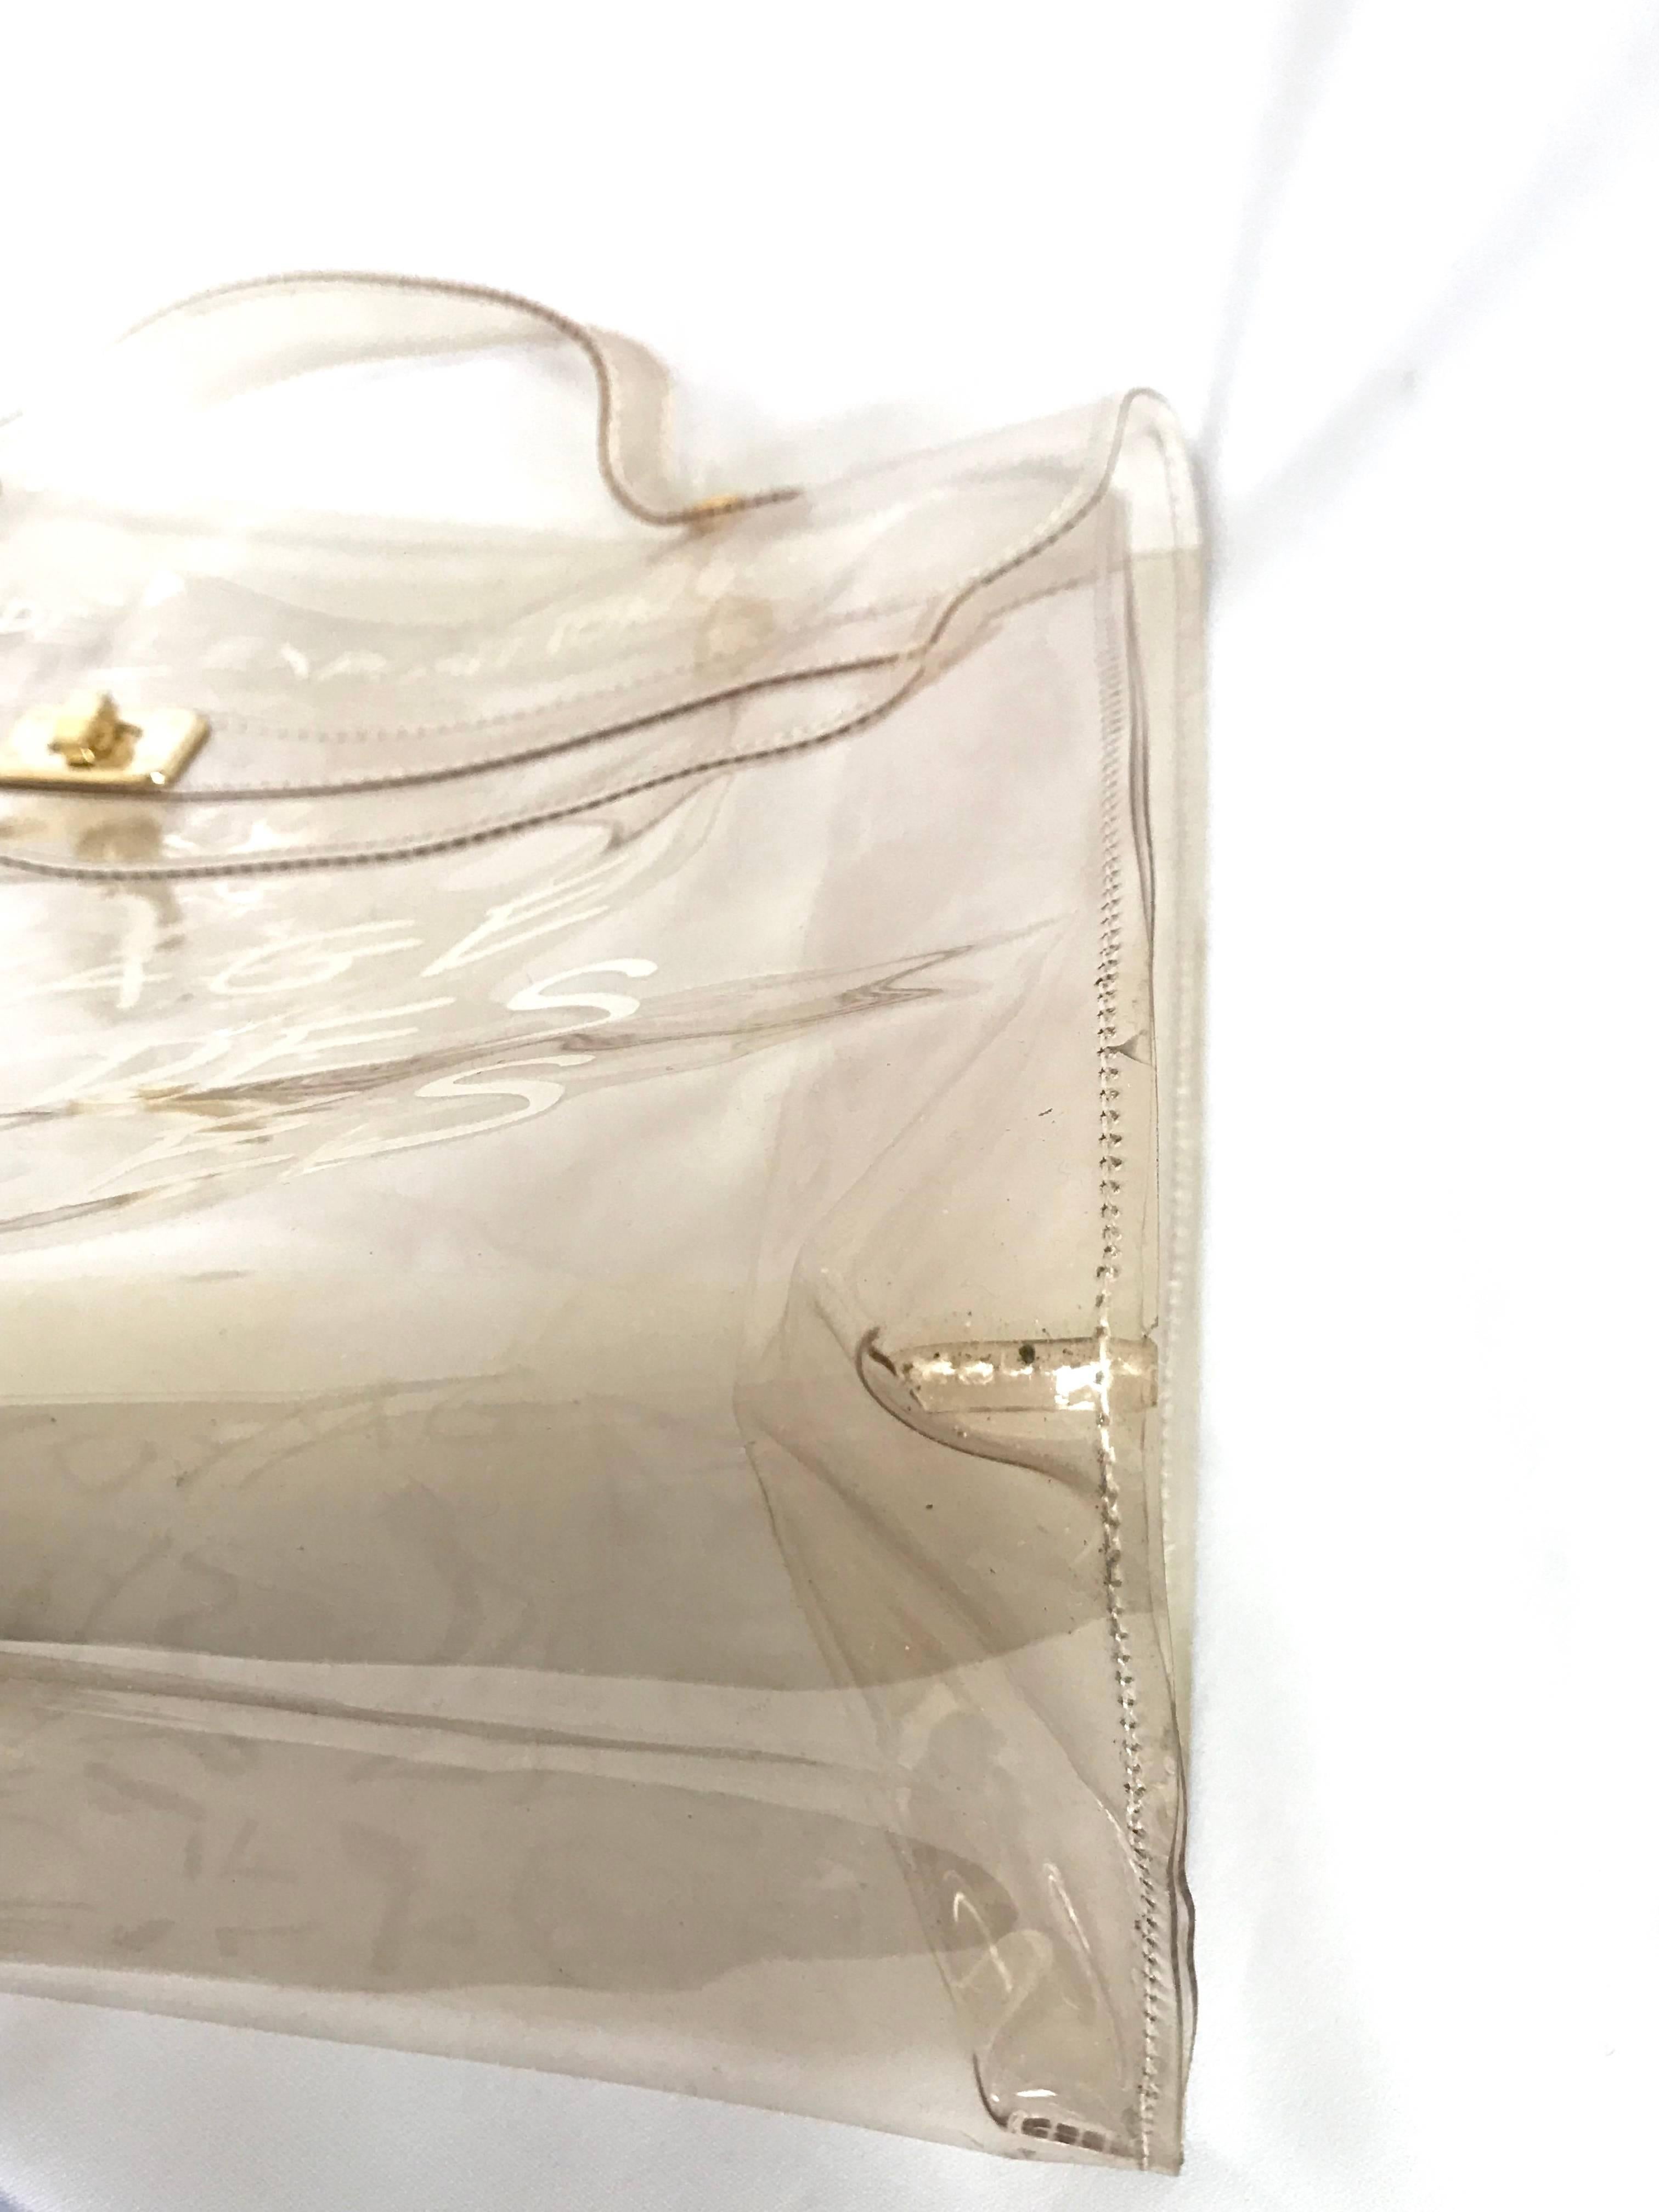 MINT. Vintage Hermes clear, transparent vinyl Kelly bag, Japan limited Edition.  6